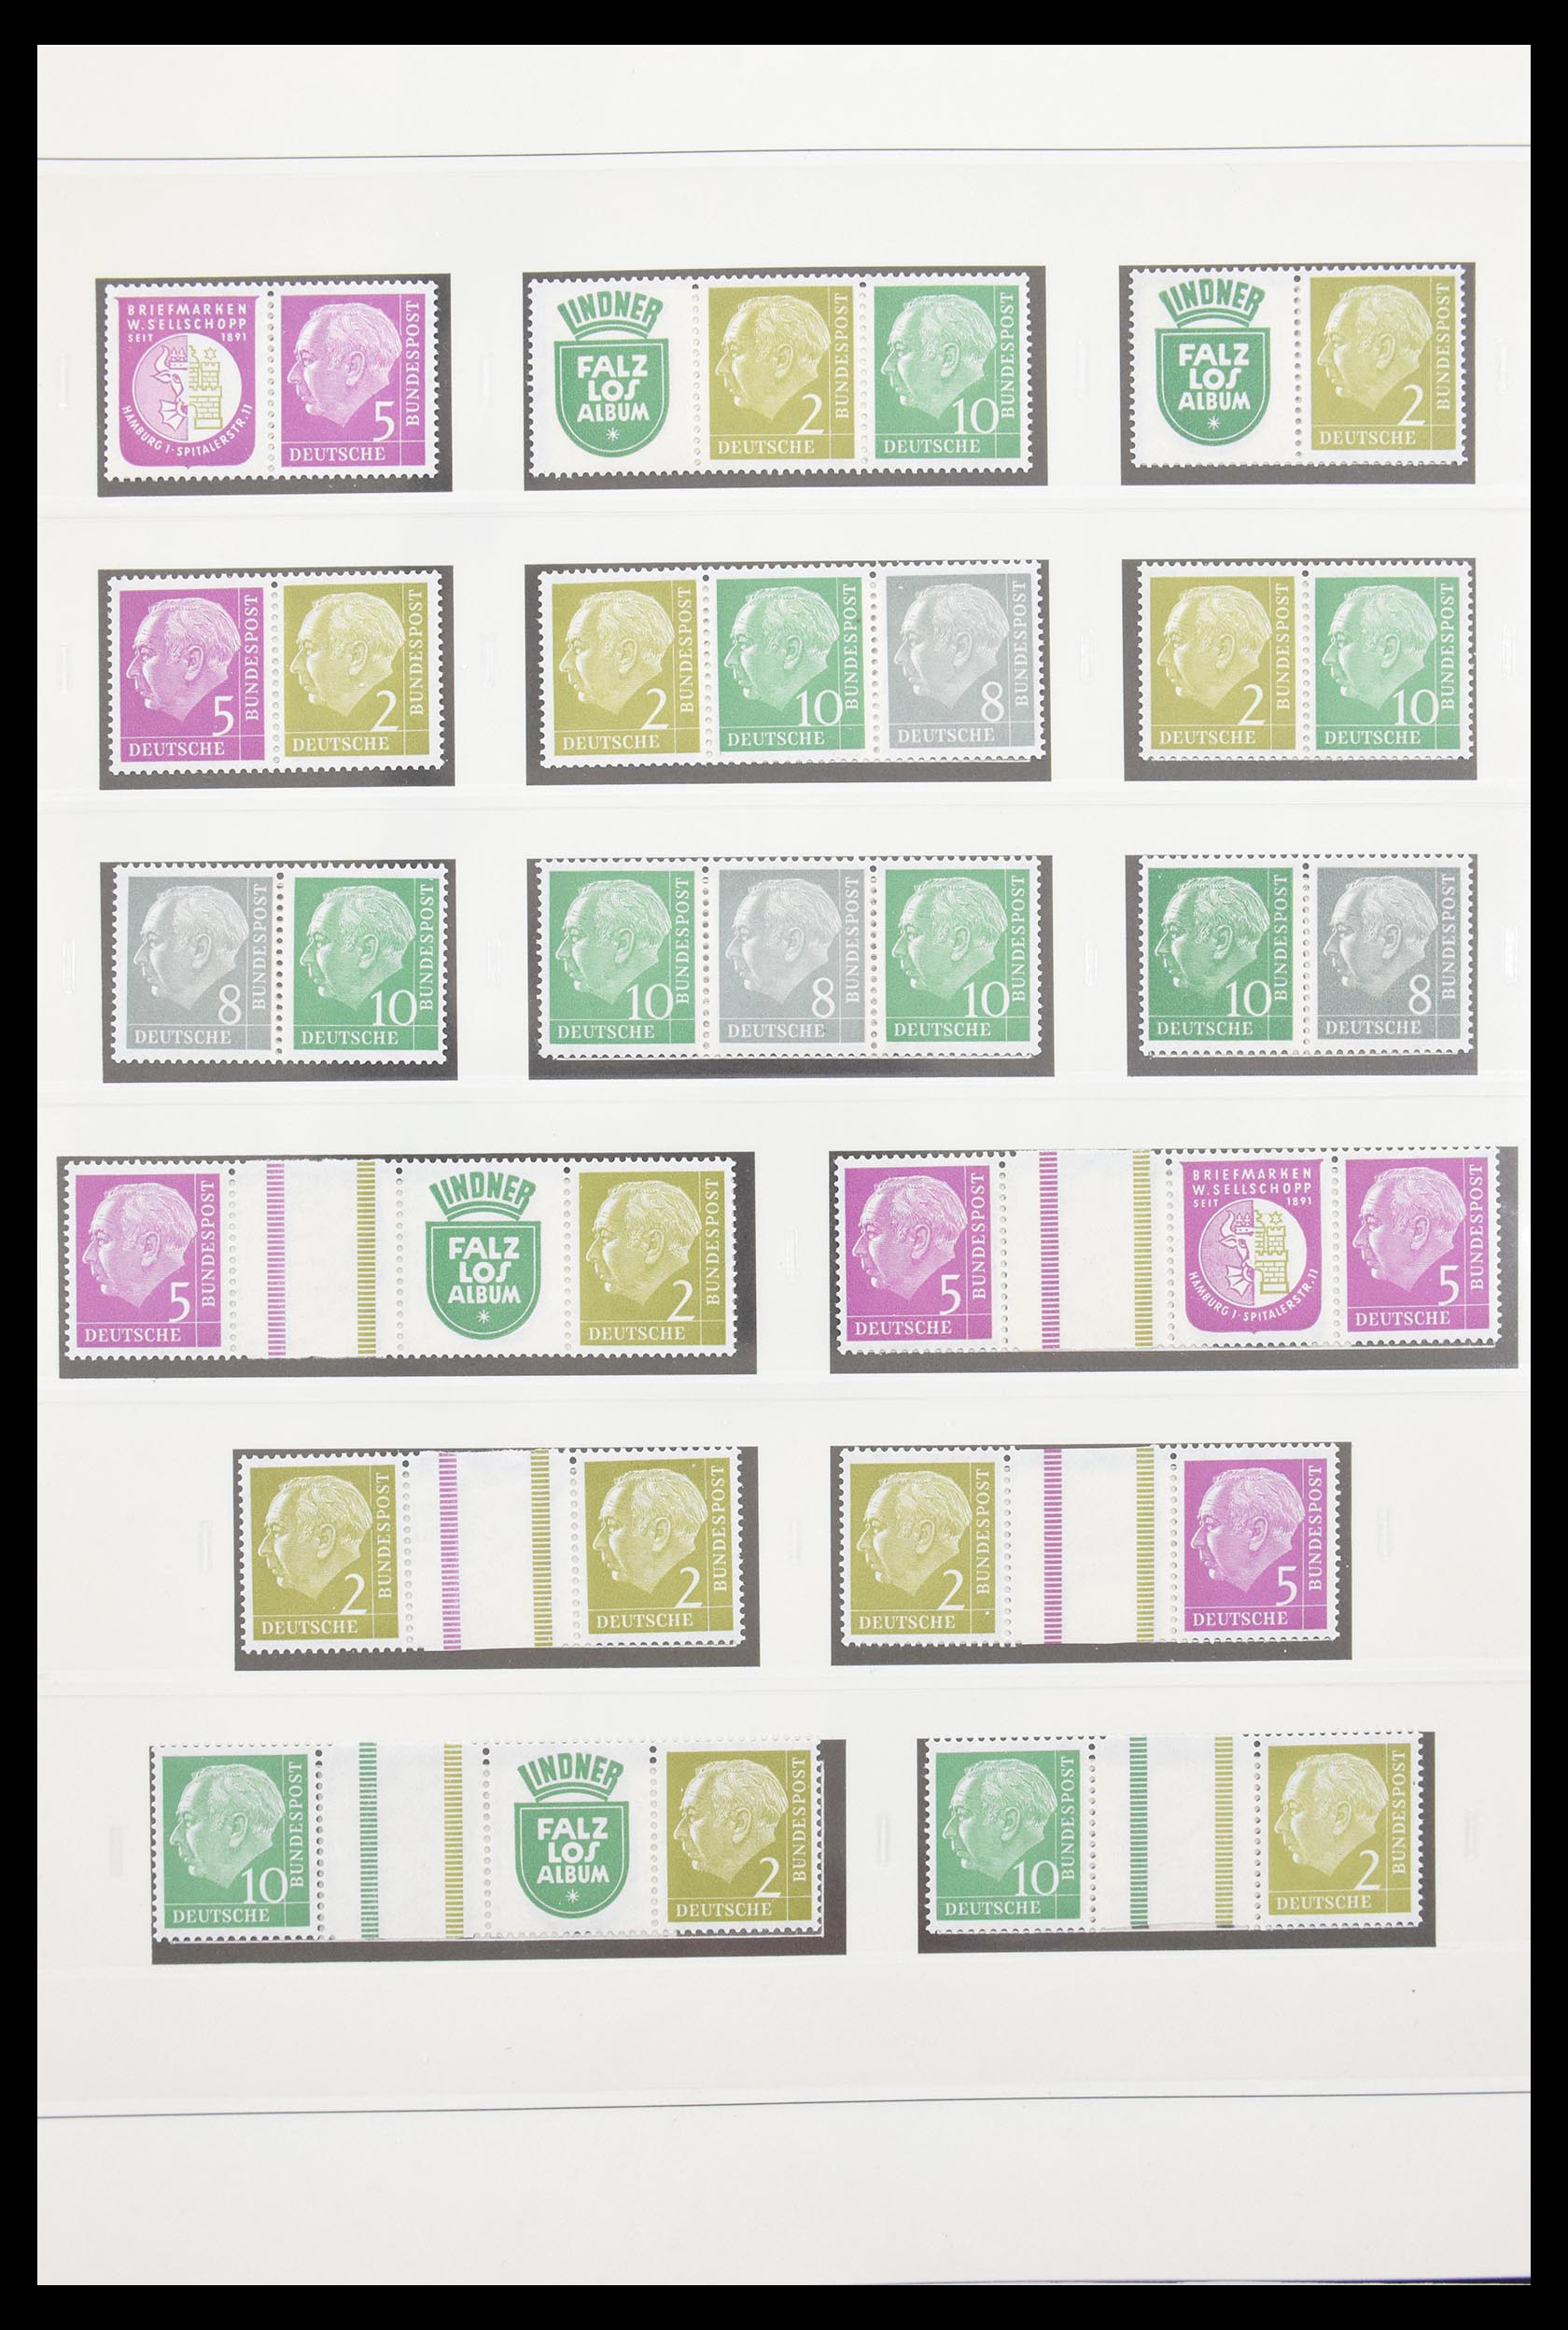 30605 007 - 30605 Bundespost combinaties 1951-1974.